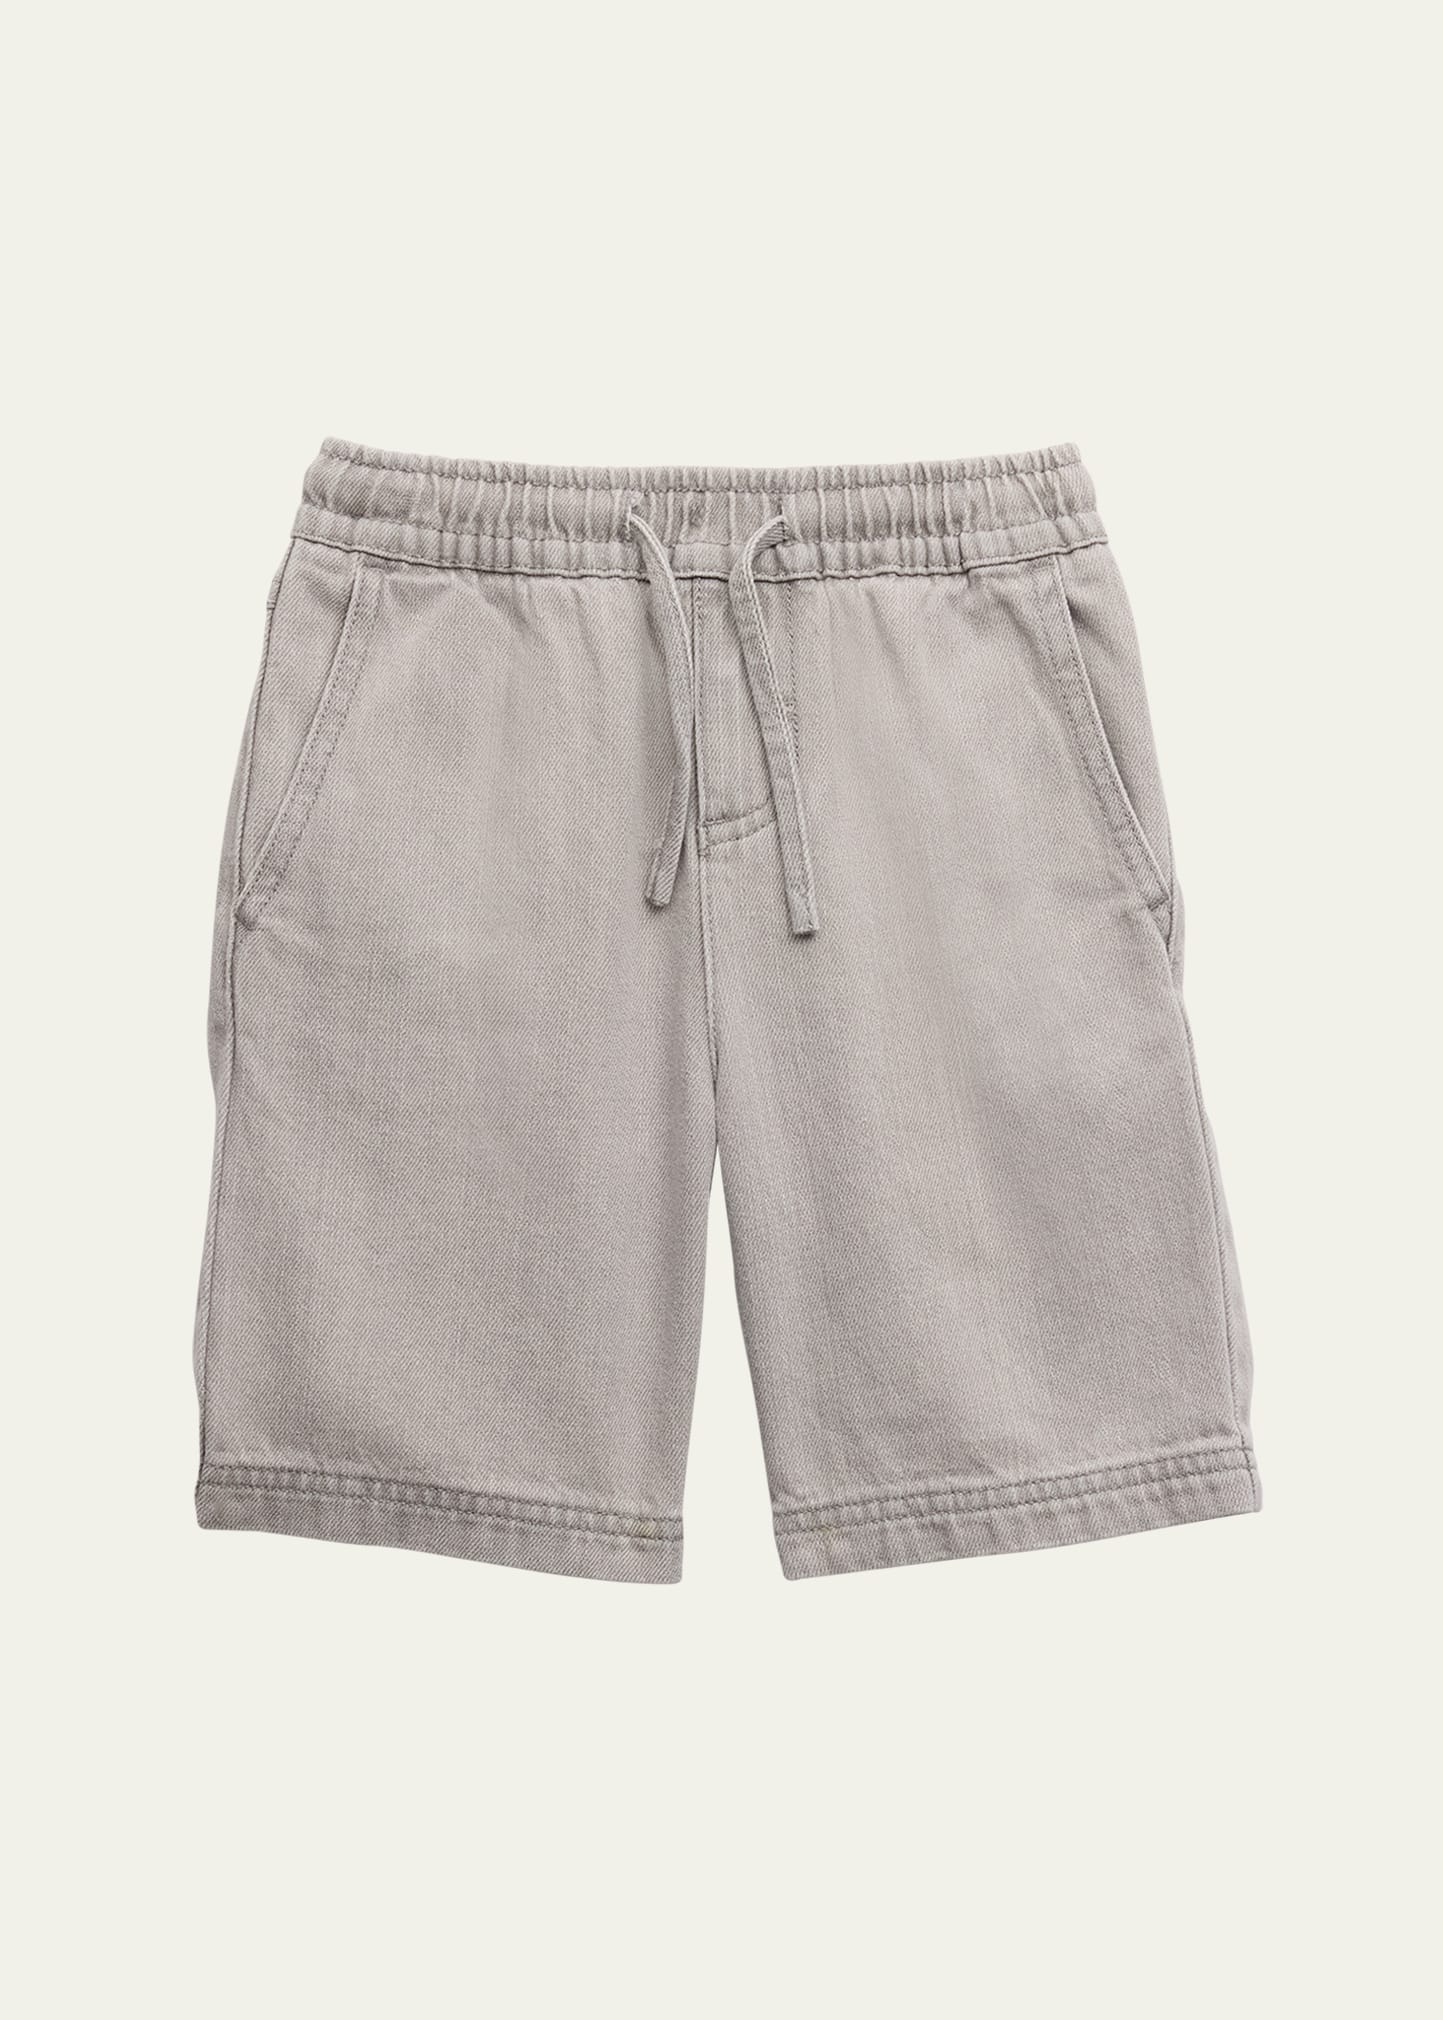 Boy's Denim Shorts, Size 2-14